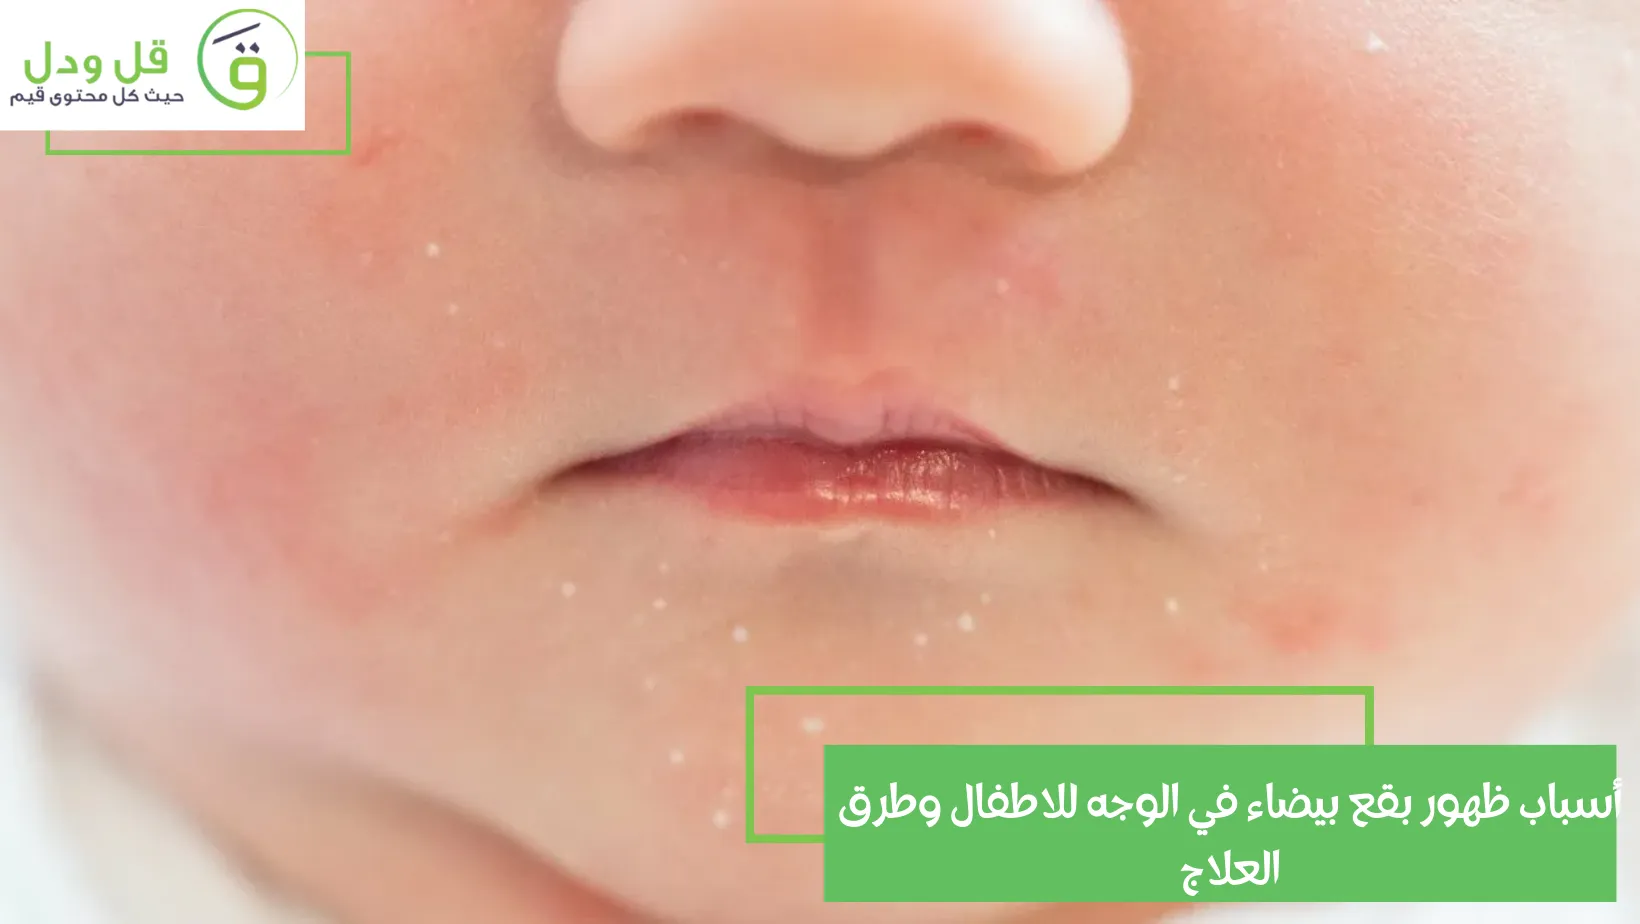 أسباب ظهور بقع بيضاء في الوجه للاطفال وطرق العلاج